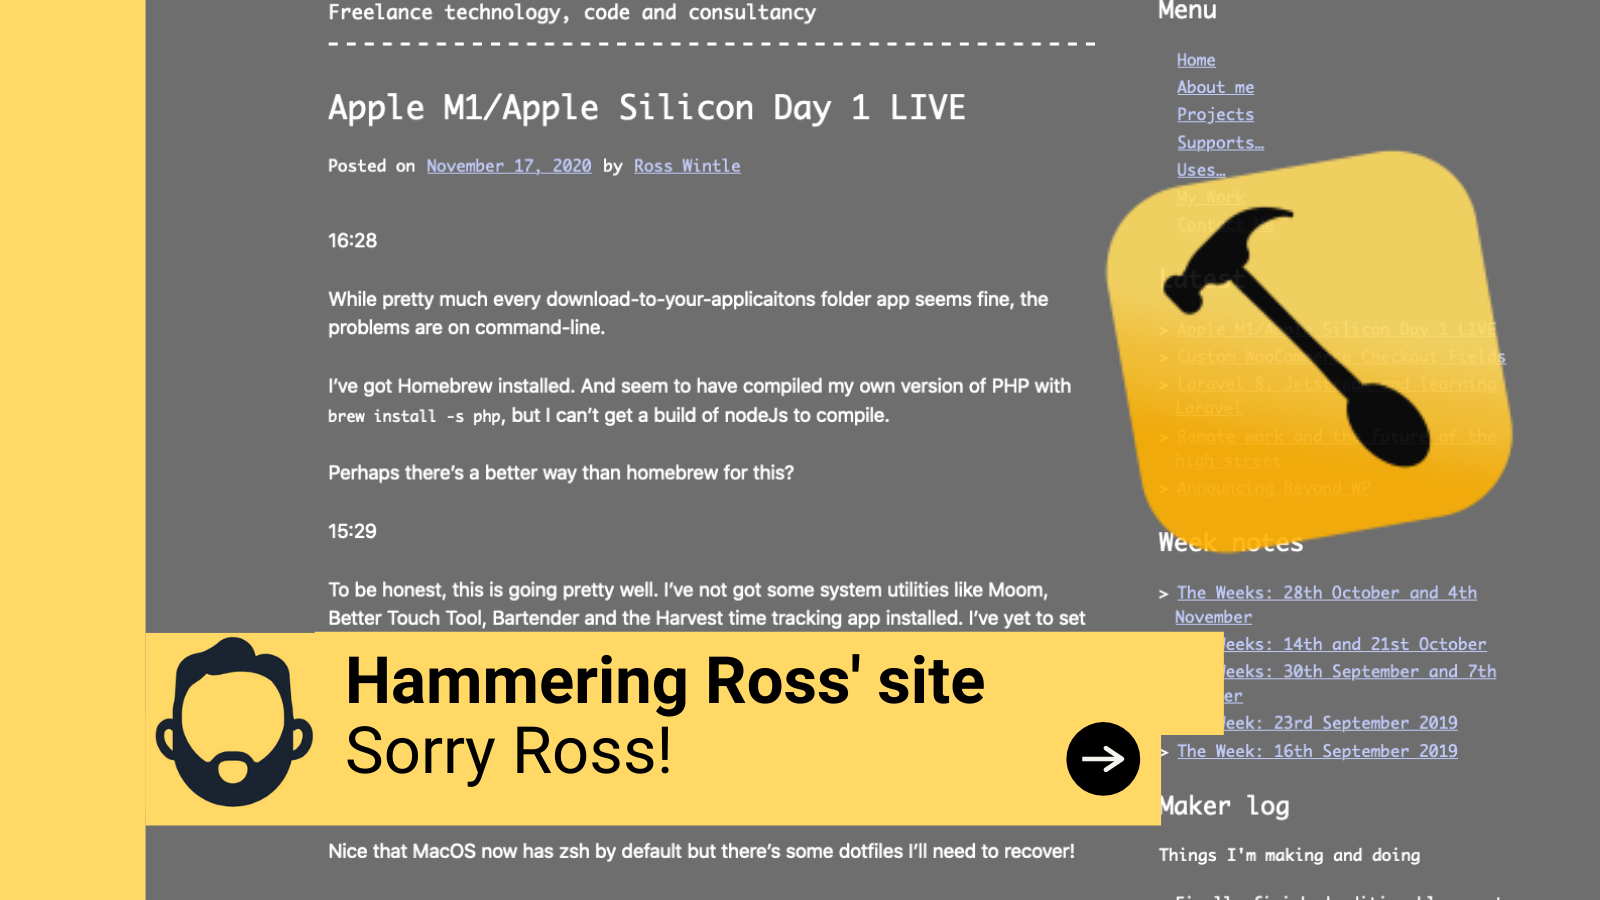 Hammering Ross’ site!